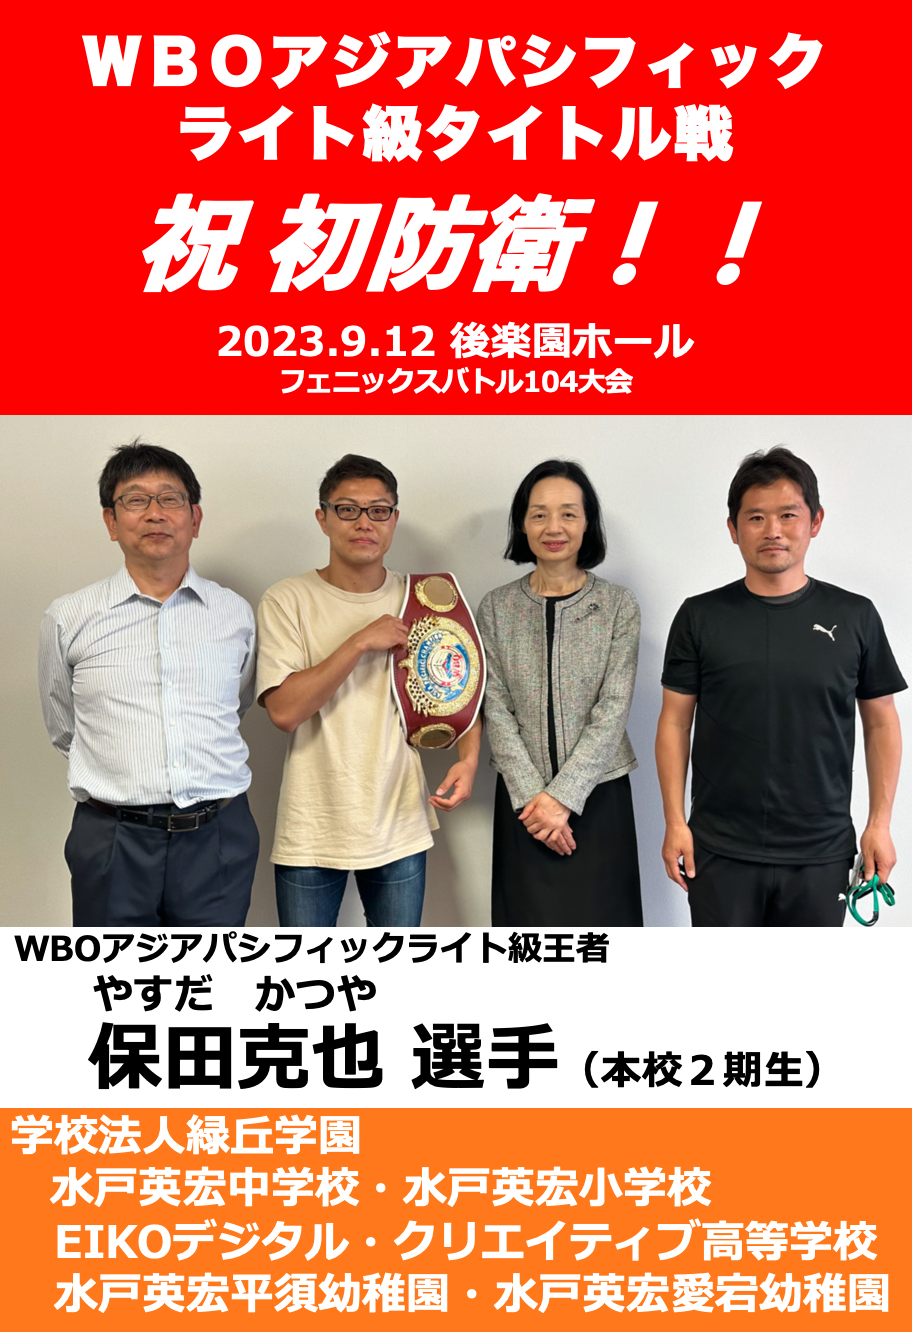 祝 WBOアジアパシフィックライト級チャンピオン初防衛！！